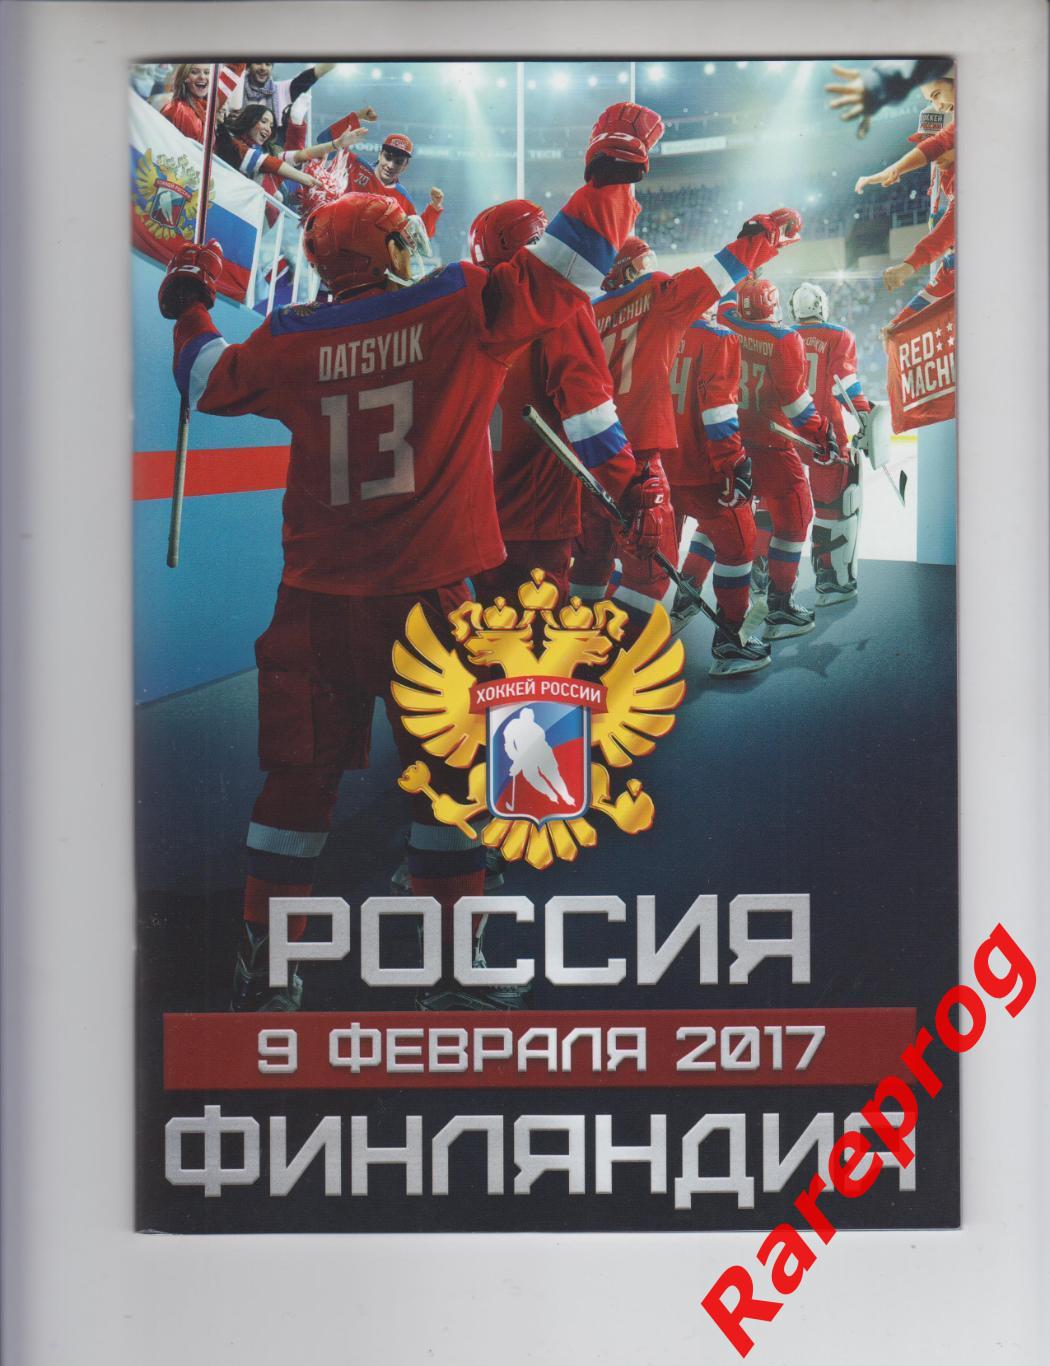 хоккей - Россия Финляндия 2017